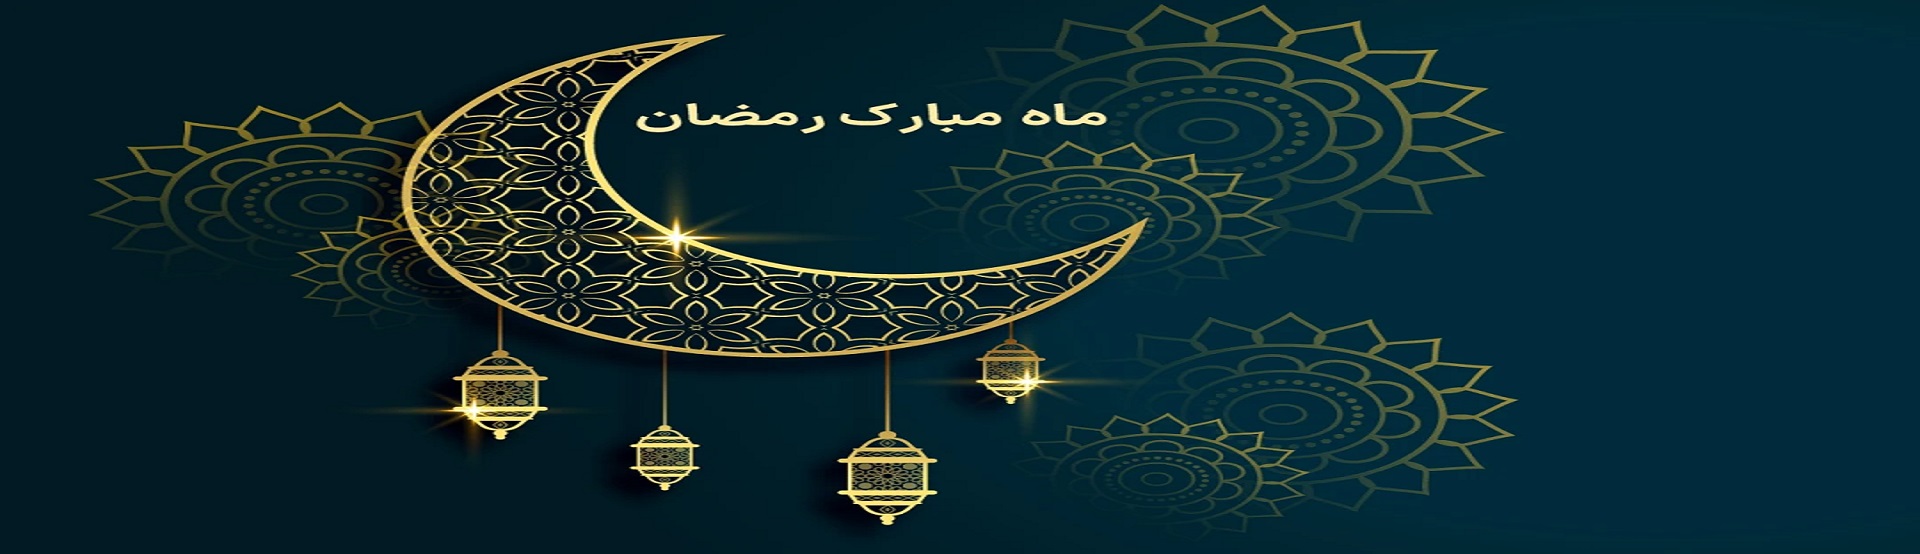 ماه مبارک رمضان و بهار قرآن مبارک باد..